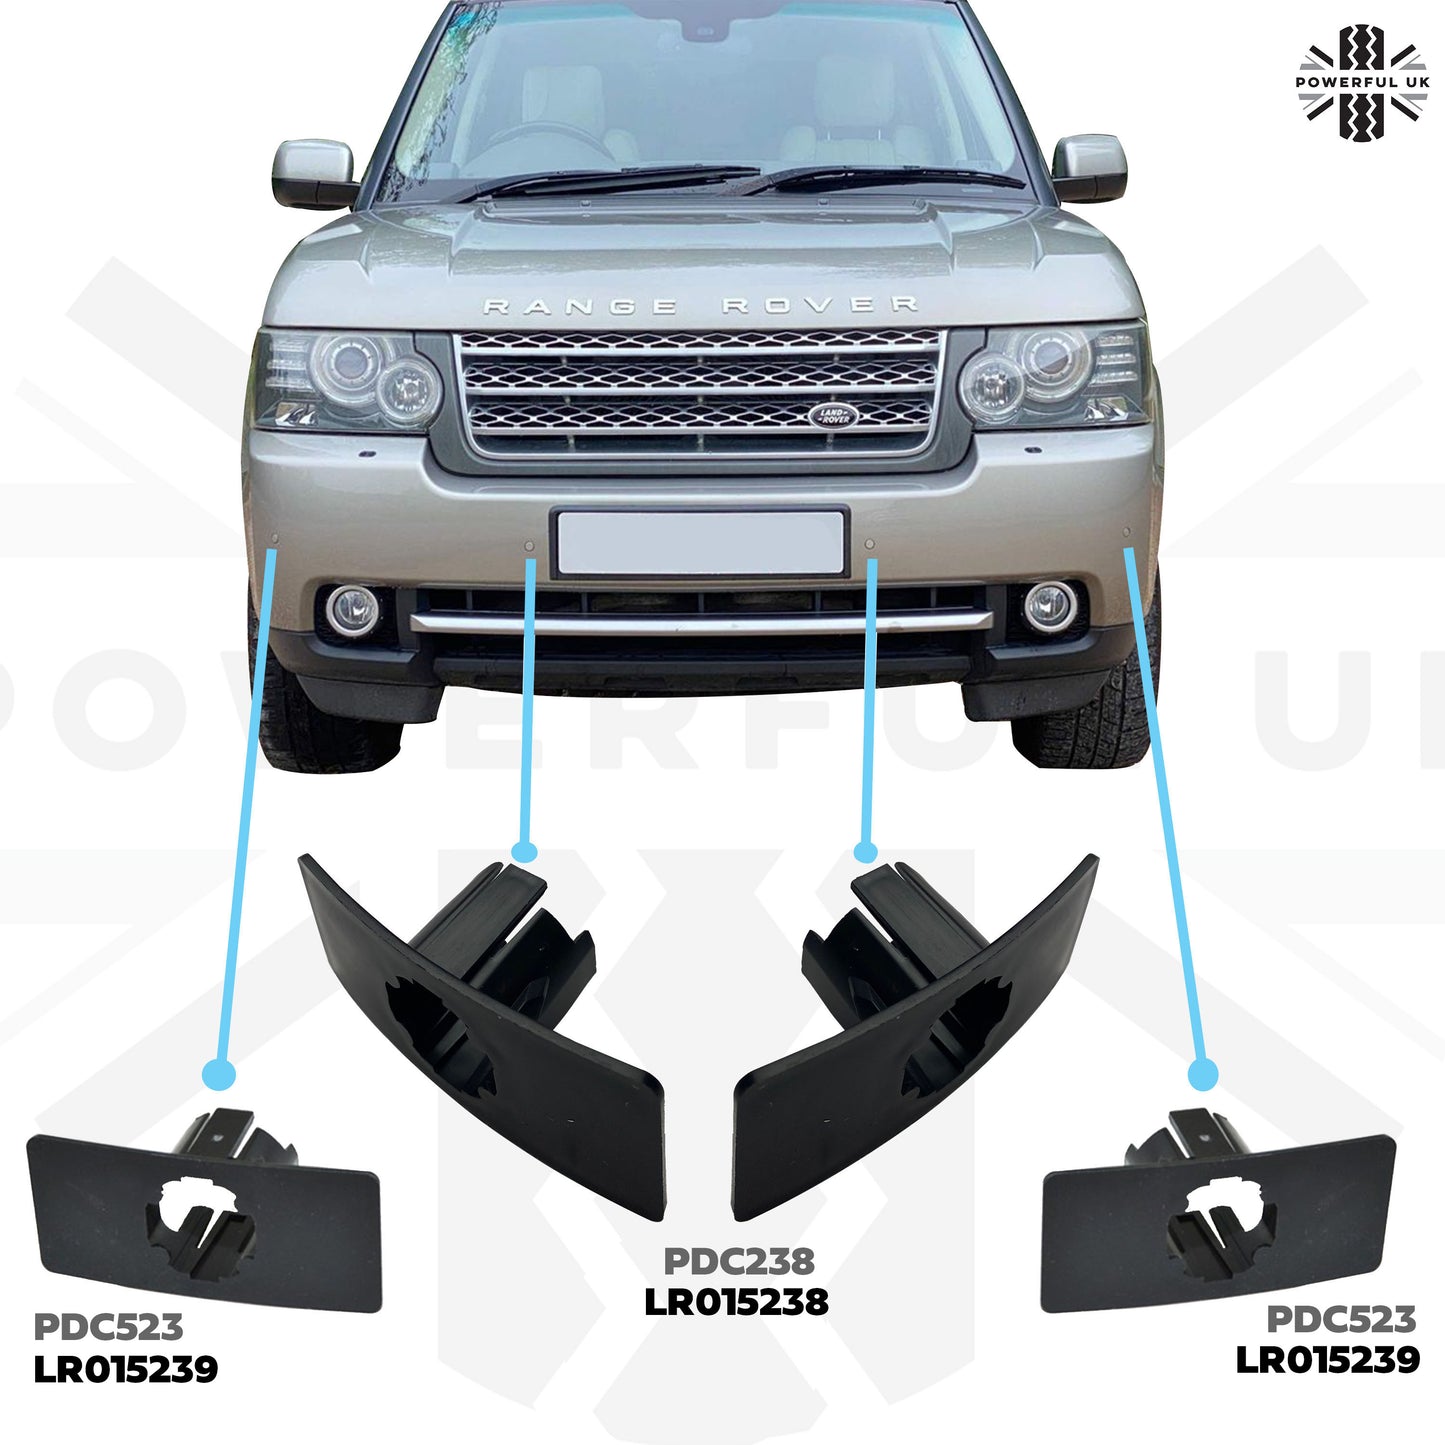 Genuine Parking Sensor Holder Bracket for Front Bumper on Range Rover L322